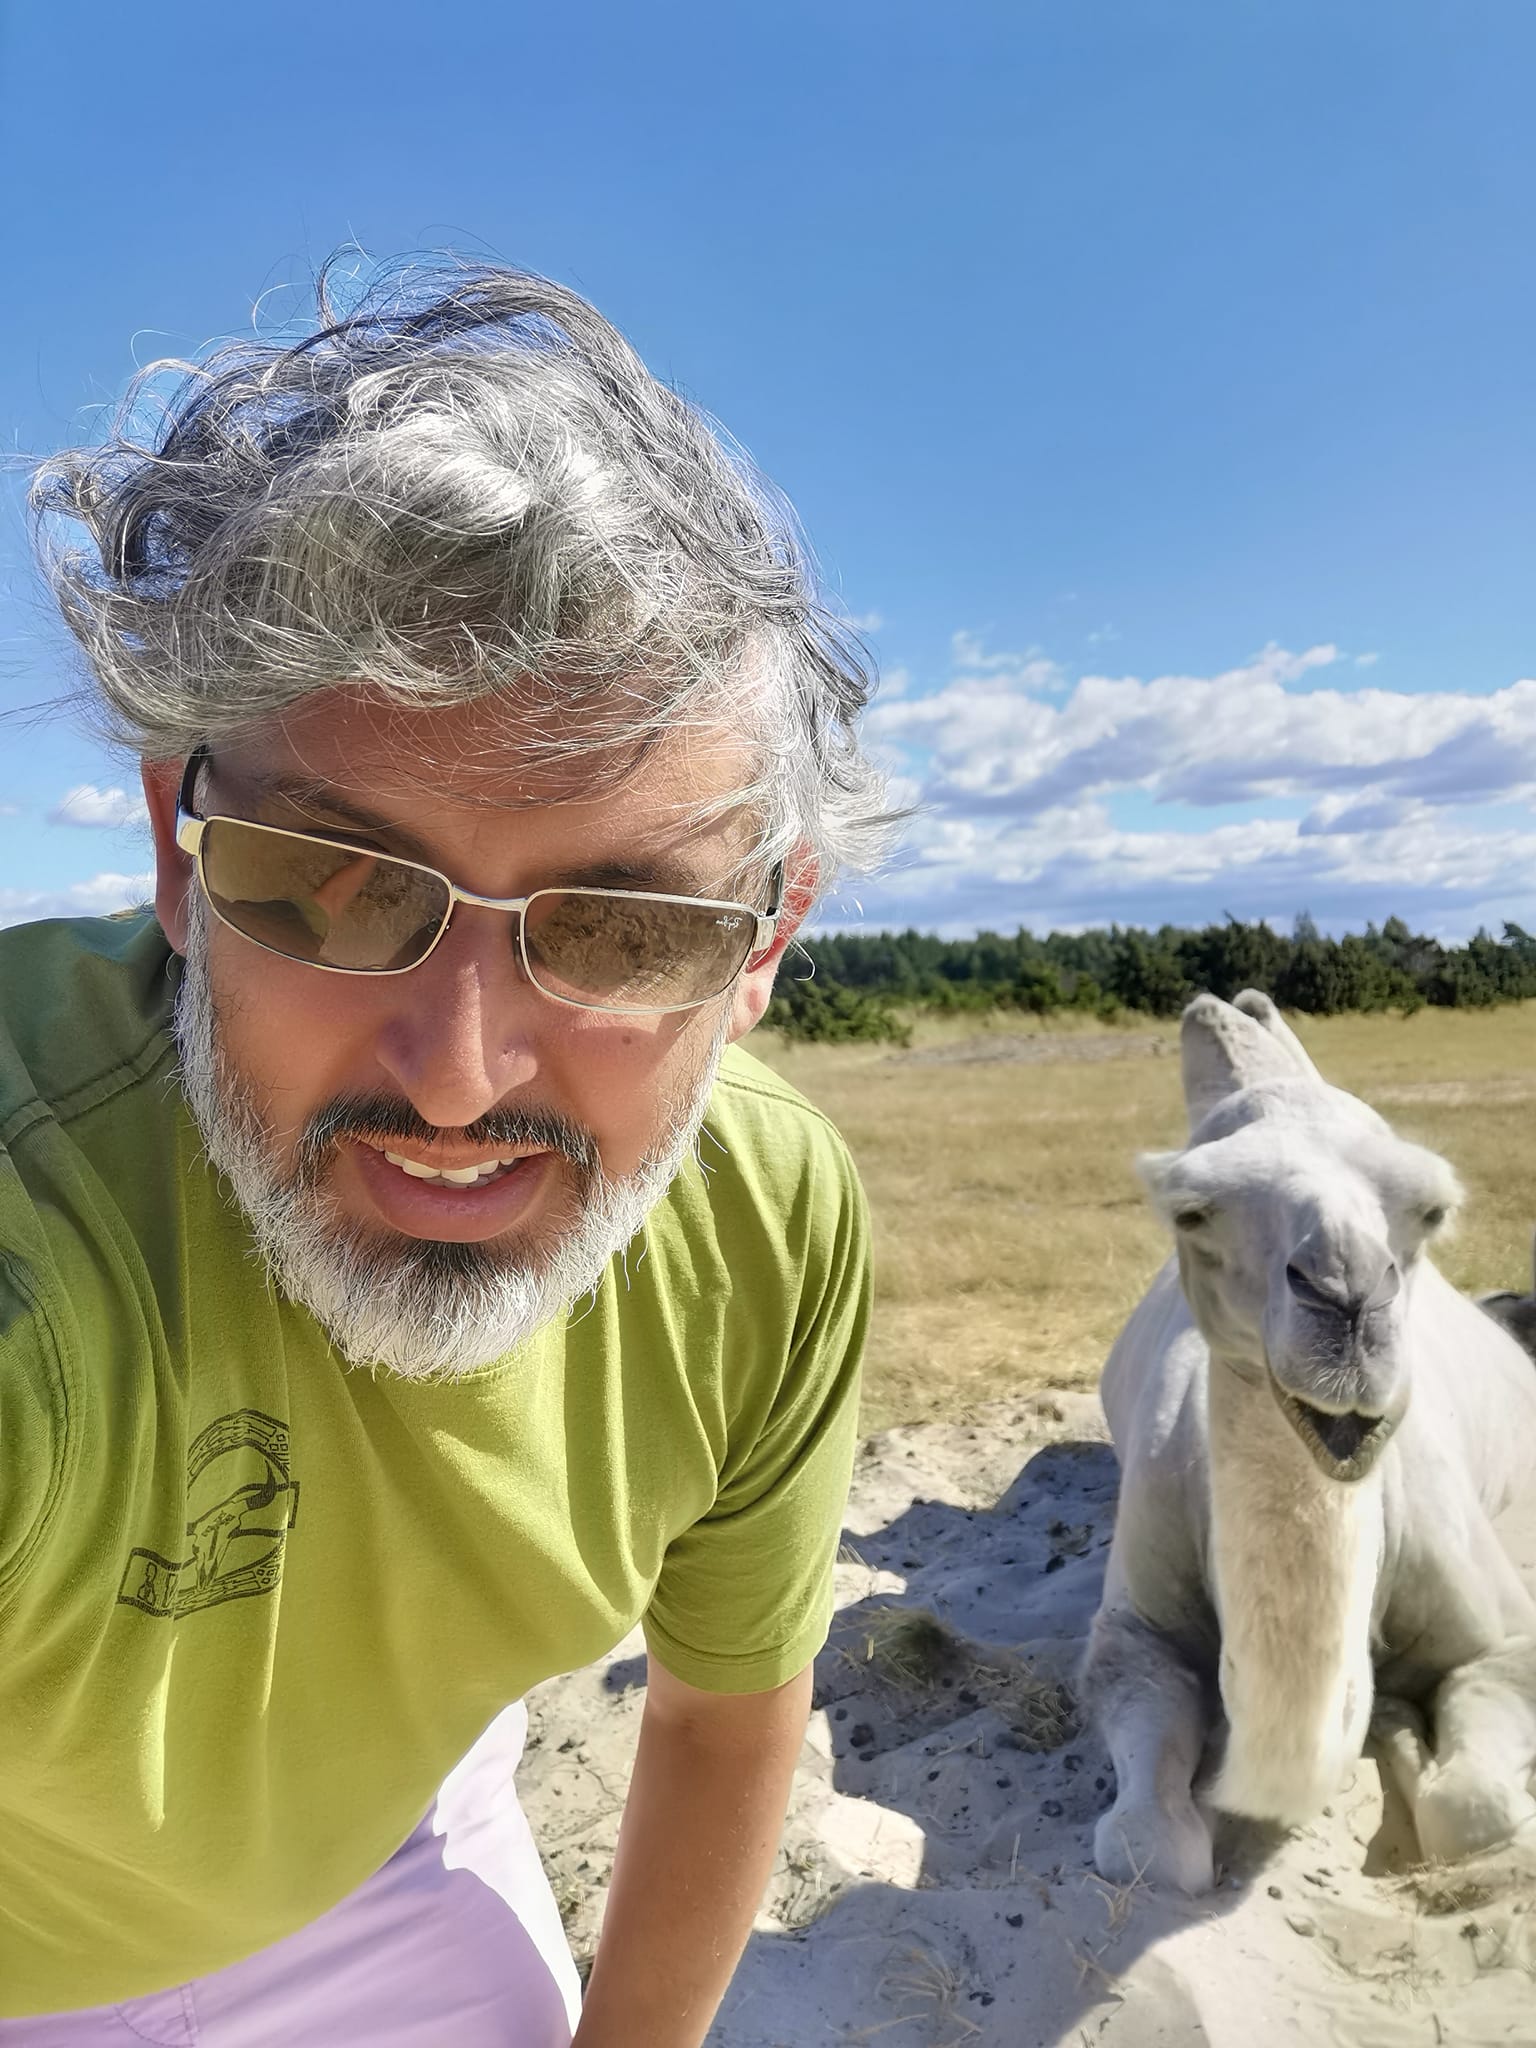 En manligt kodad person i grön t-shirt och solglasögon tar en selfie med en vit kamel.